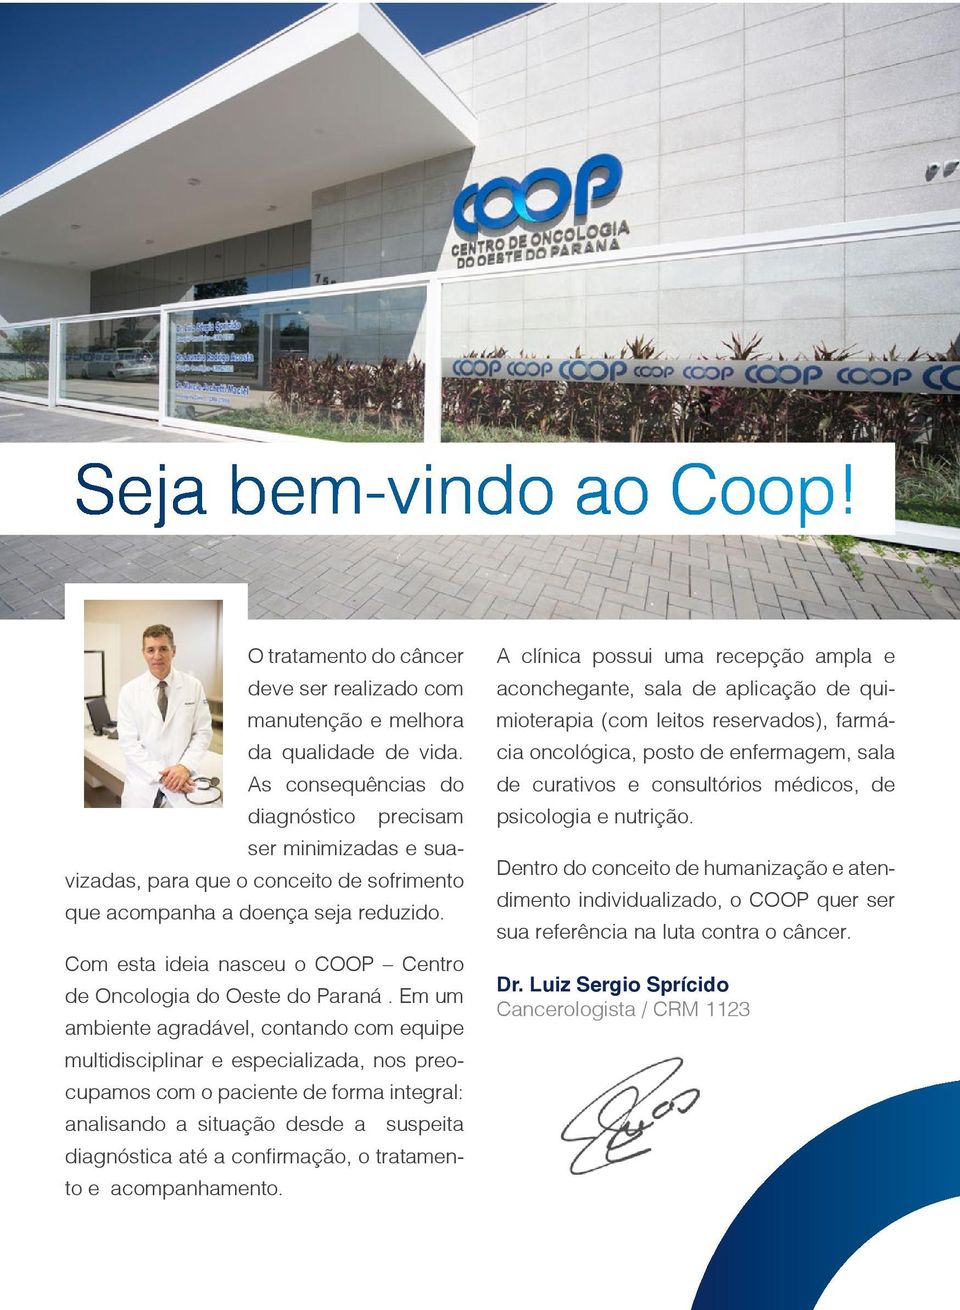 Com esta ideia nasceu o COOP Centro de Oncologia do Oeste do Paraná.